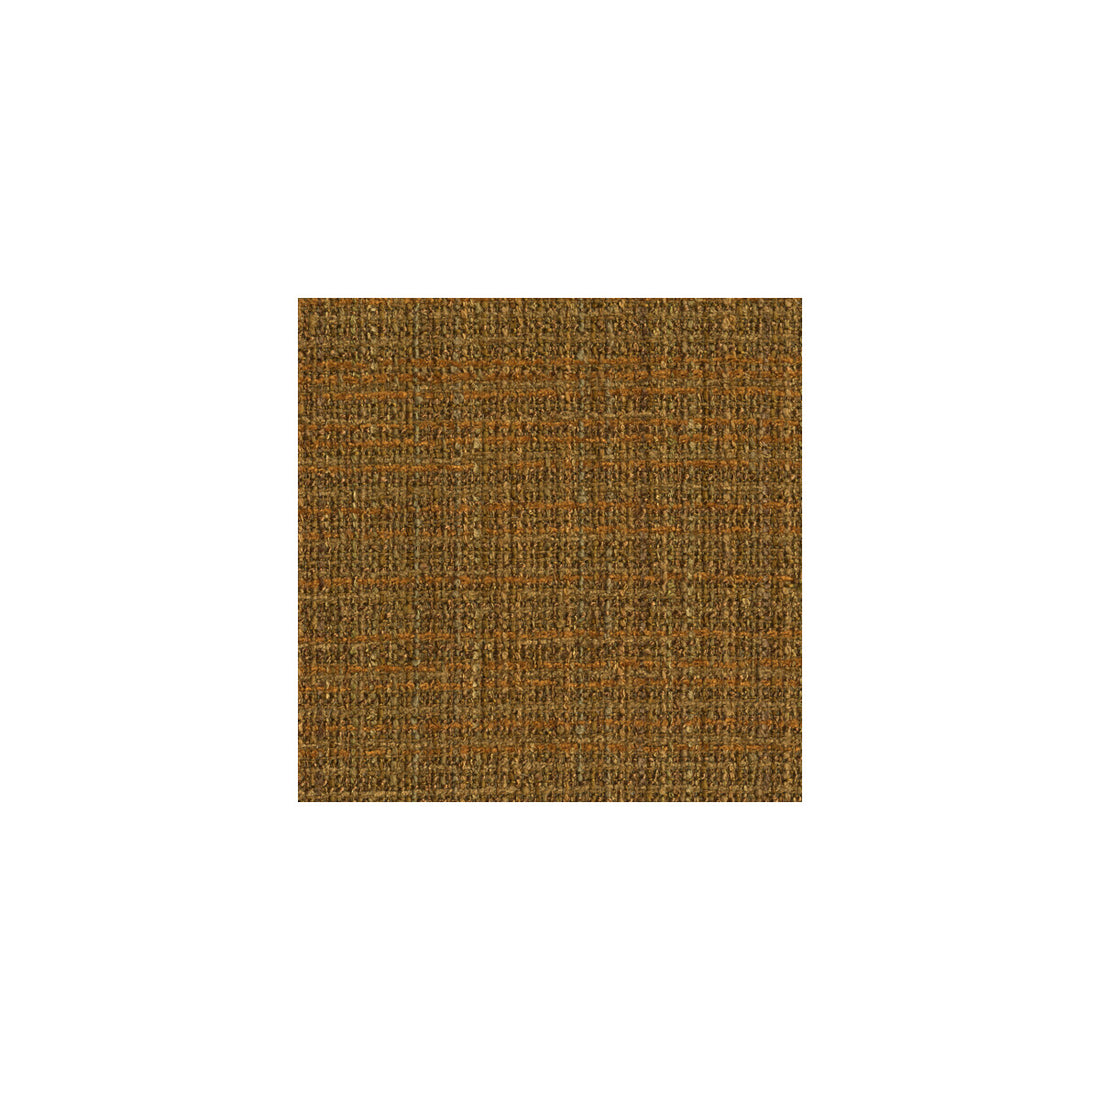 Kf Des fabric - pattern 25684.640.0 - by Kravet Design